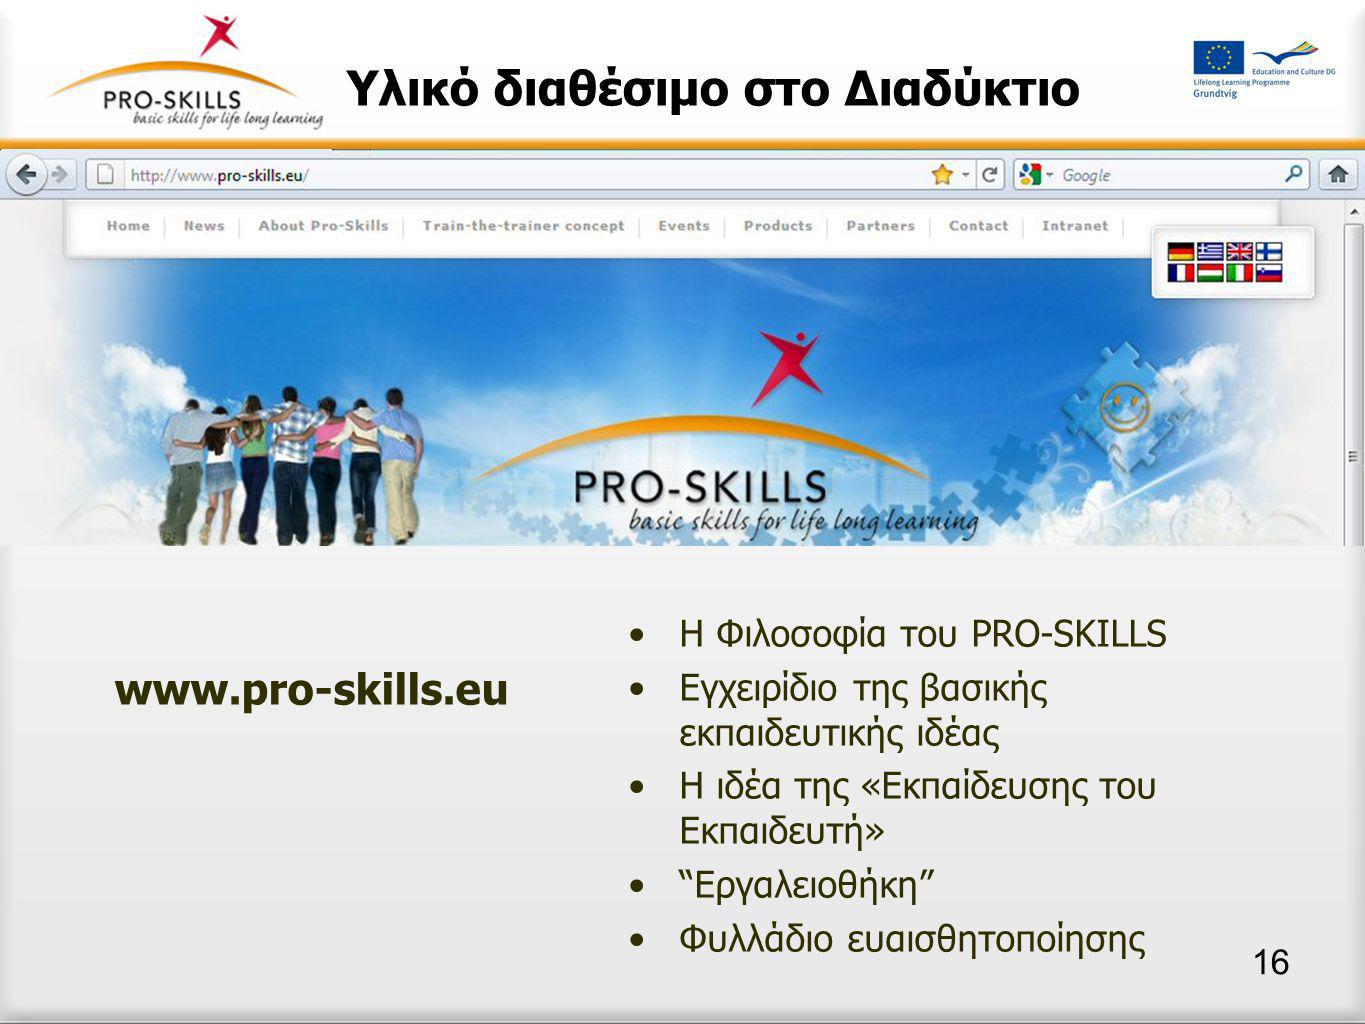 Οι εταίροι του Pro-Skills